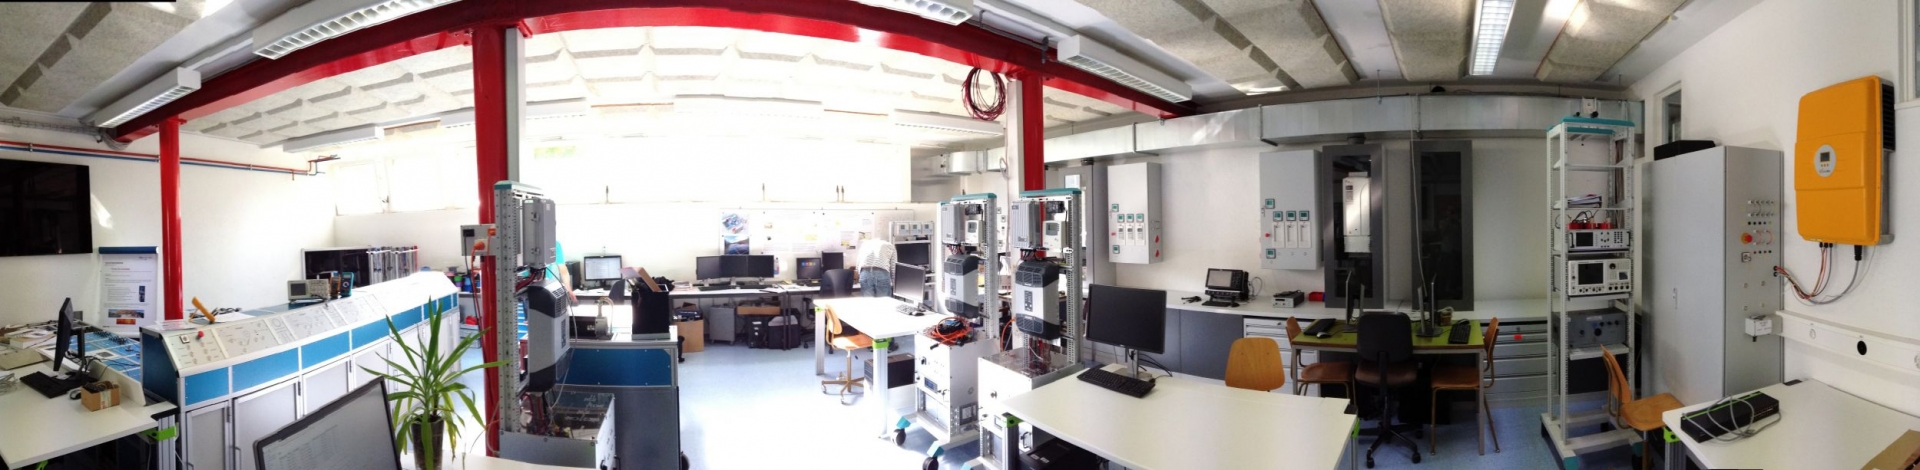 Le laboratoire GridLab a été inauguré jeudi à Sion. 